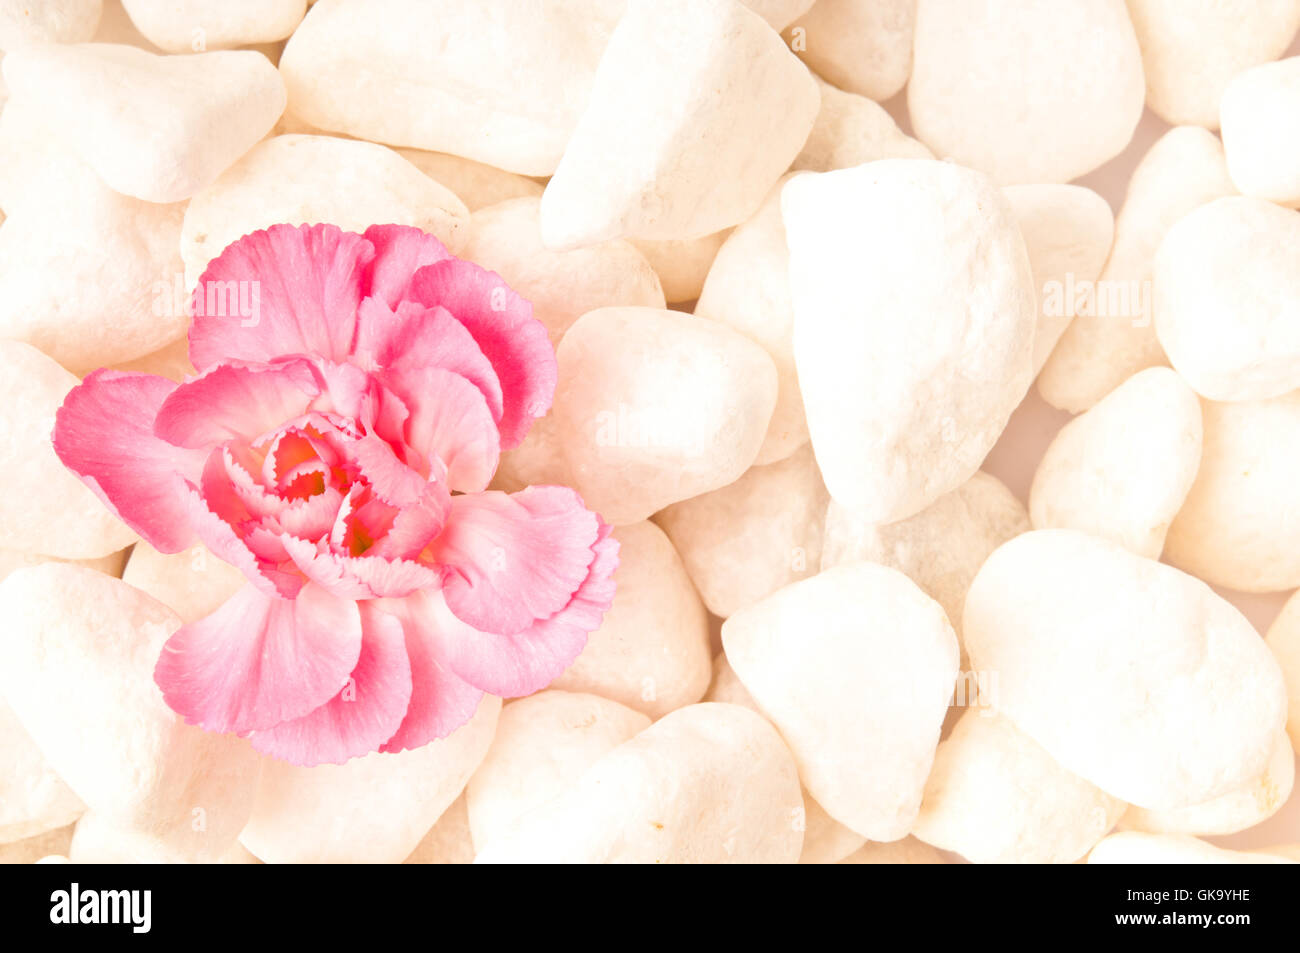 Achtsamkeit-Konzept, rosa Blume auf weißen Steinen Stockfoto